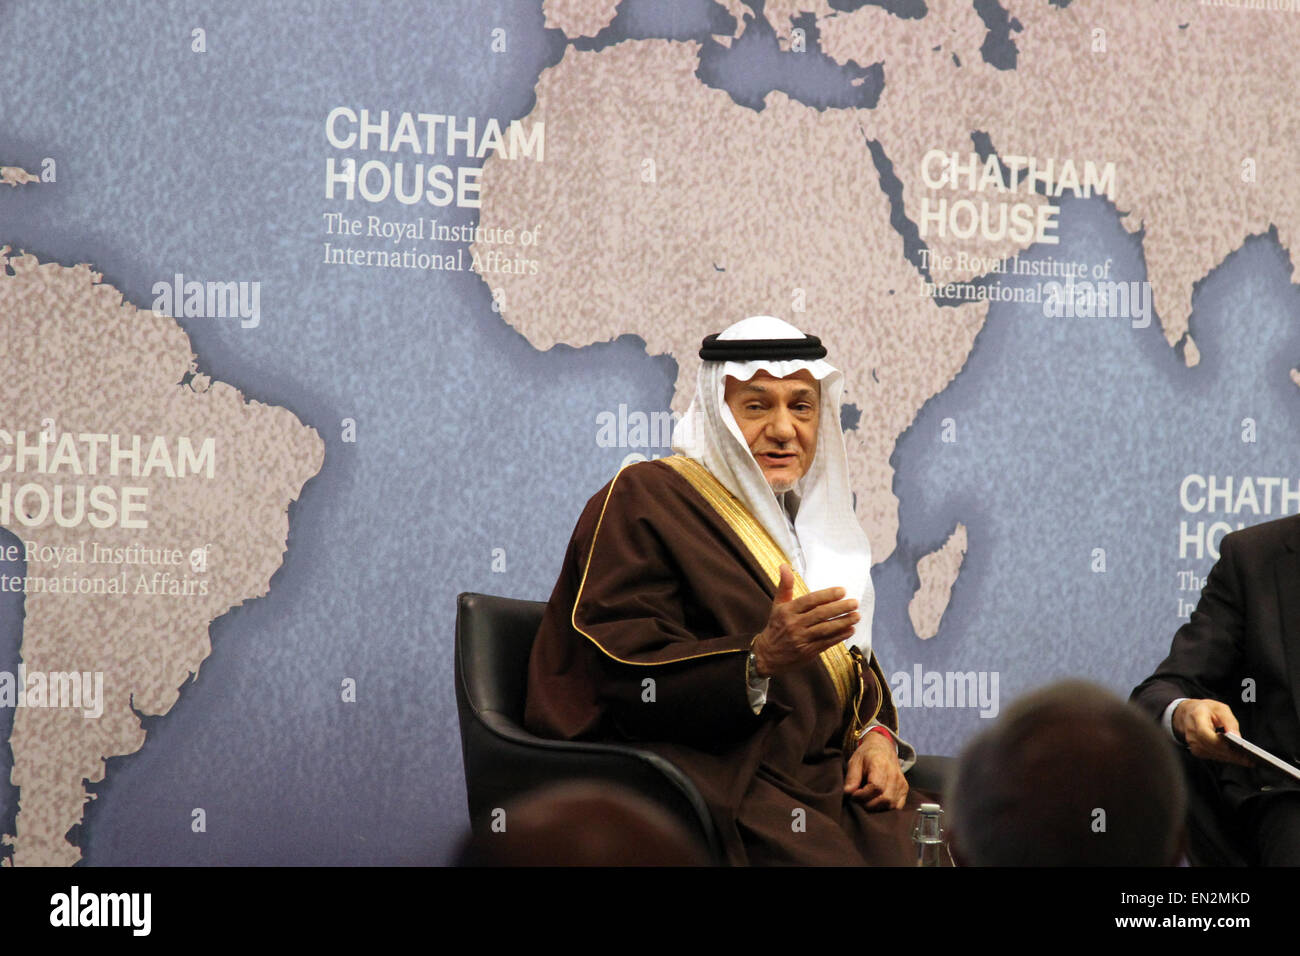 El veterano diplomático saudí príncipe Turki bin Faisal Al Saud, hablando en el think tank Chatham House en Londres, Reino Unido el 18 de marzo de 2015 Foto de stock